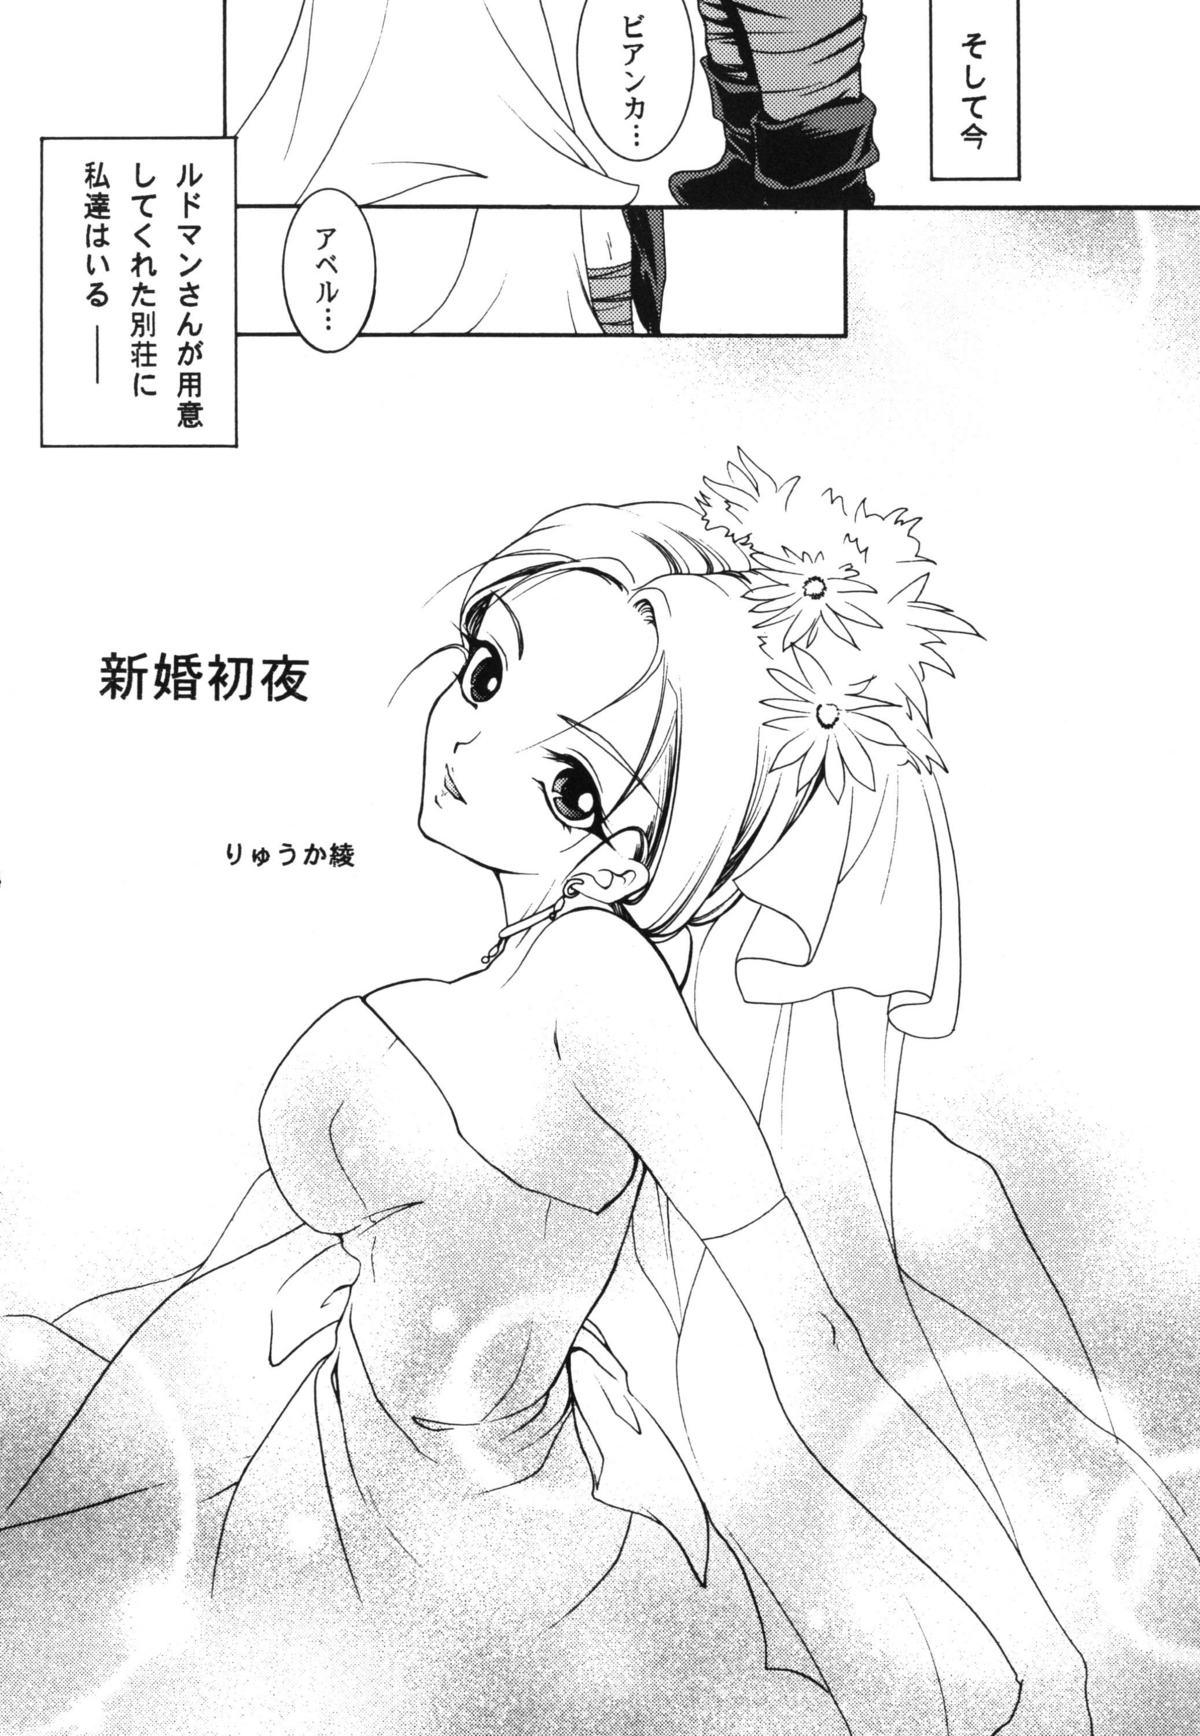 Boobies Shinkon Shoya - Dragon quest v Slut Porn - Page 4